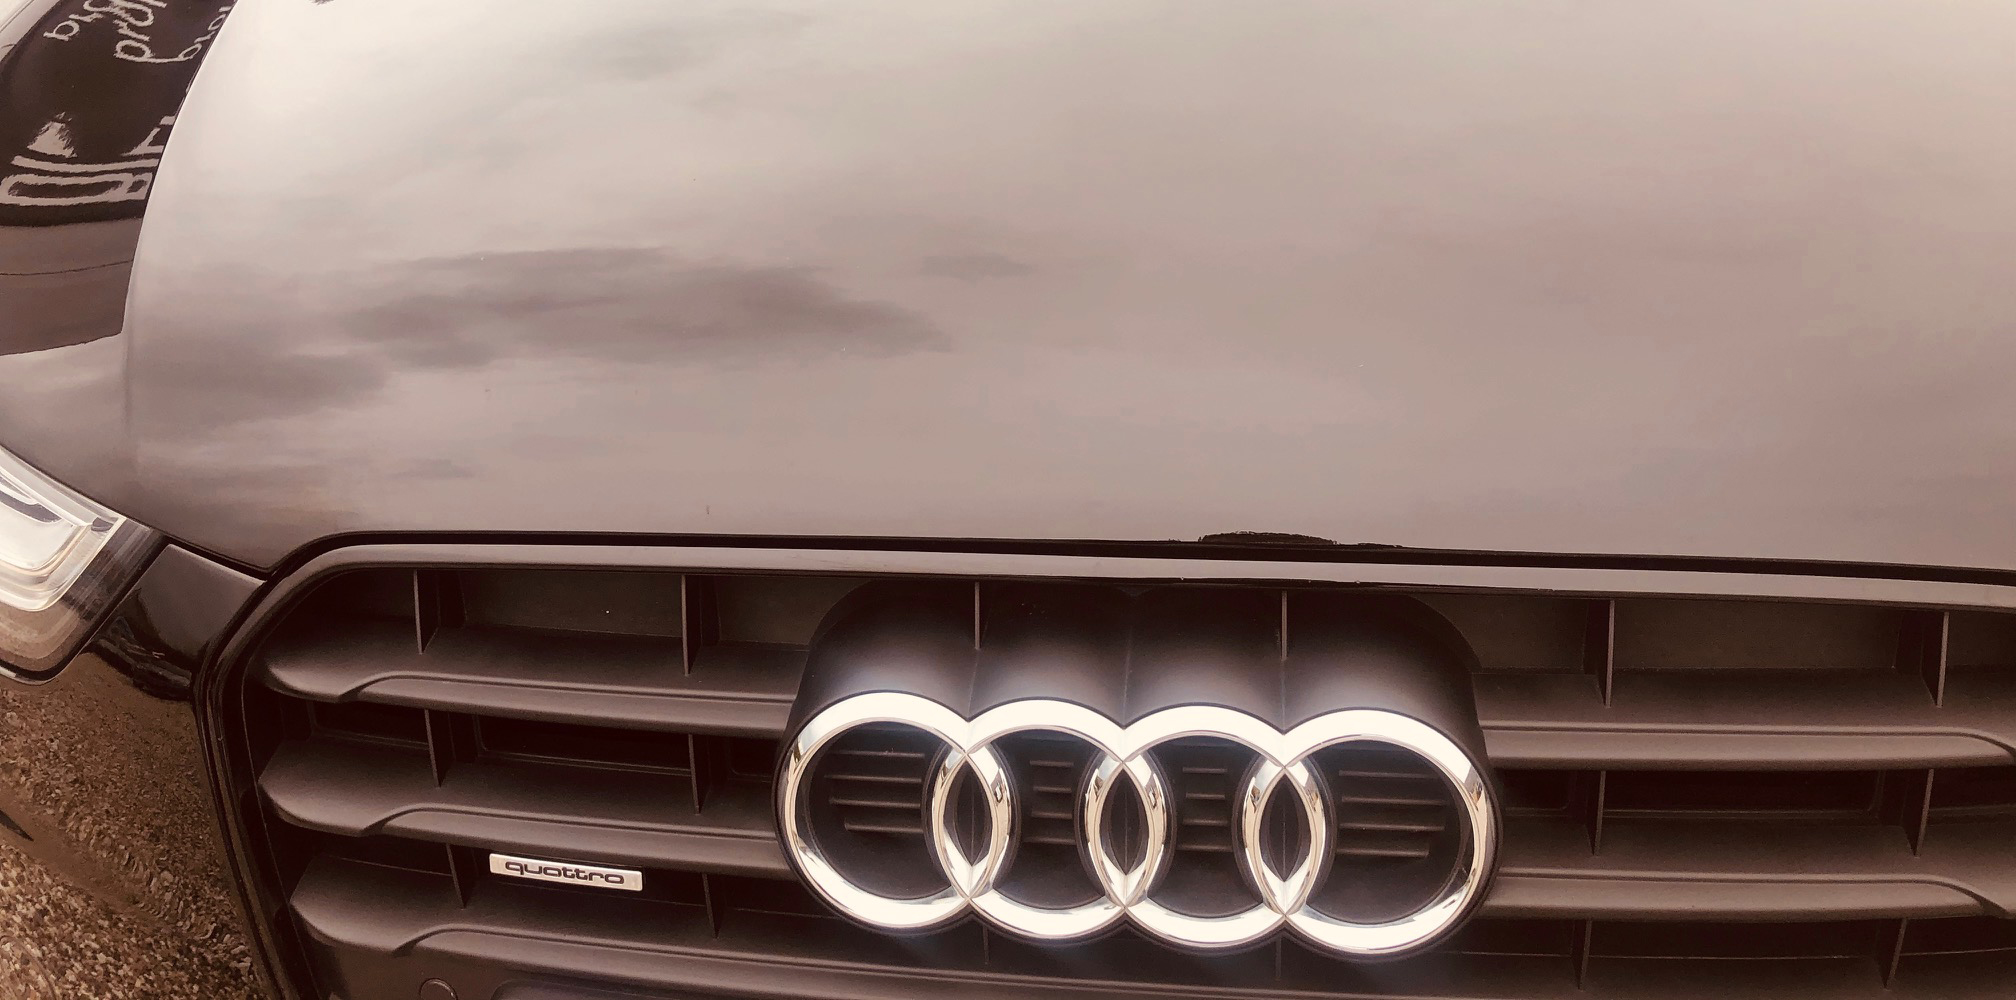 Audi A5 Sportback 3.0 TDI behandlet hos Bilpleje Hadsten